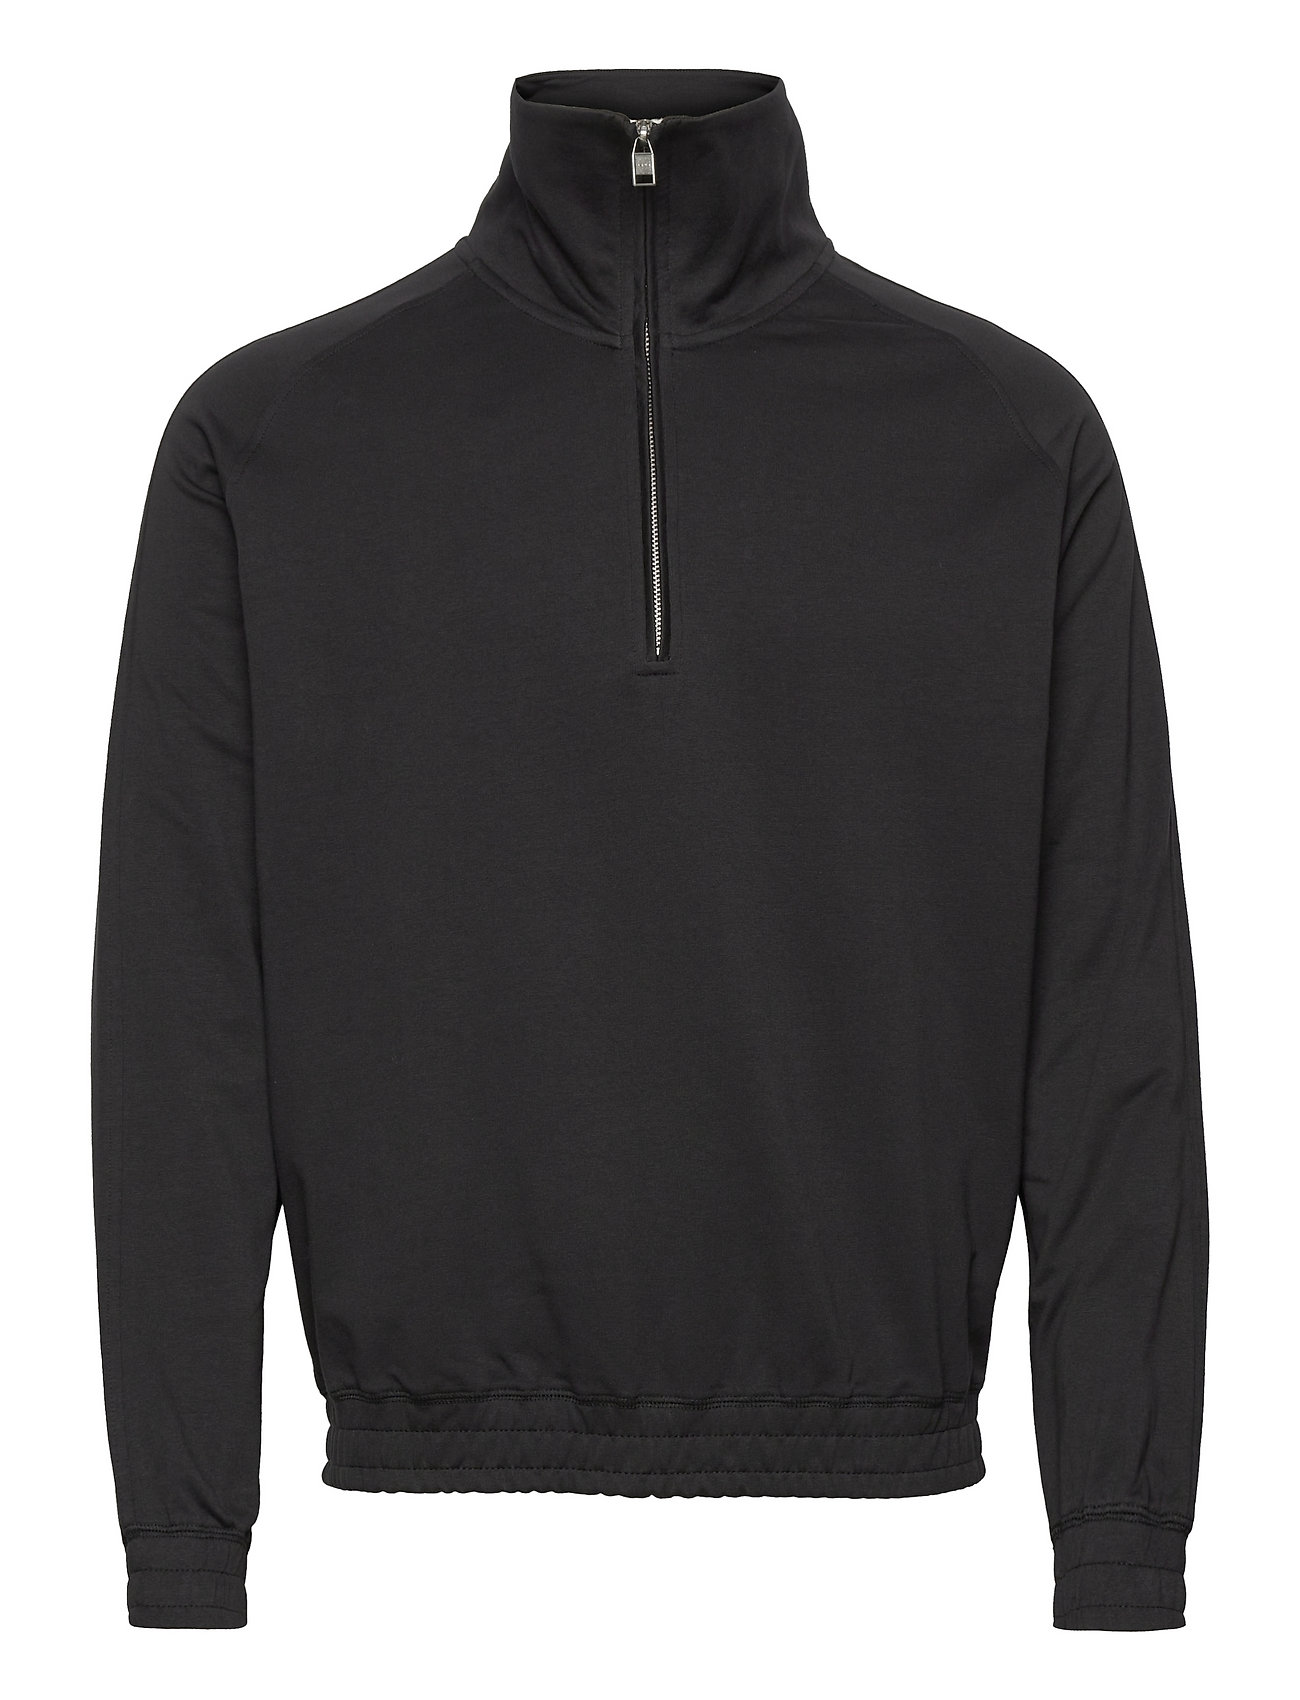 Fuller Designers Sweatshirts & Hoodies Sweatshirts Black Tiger Of Sweden